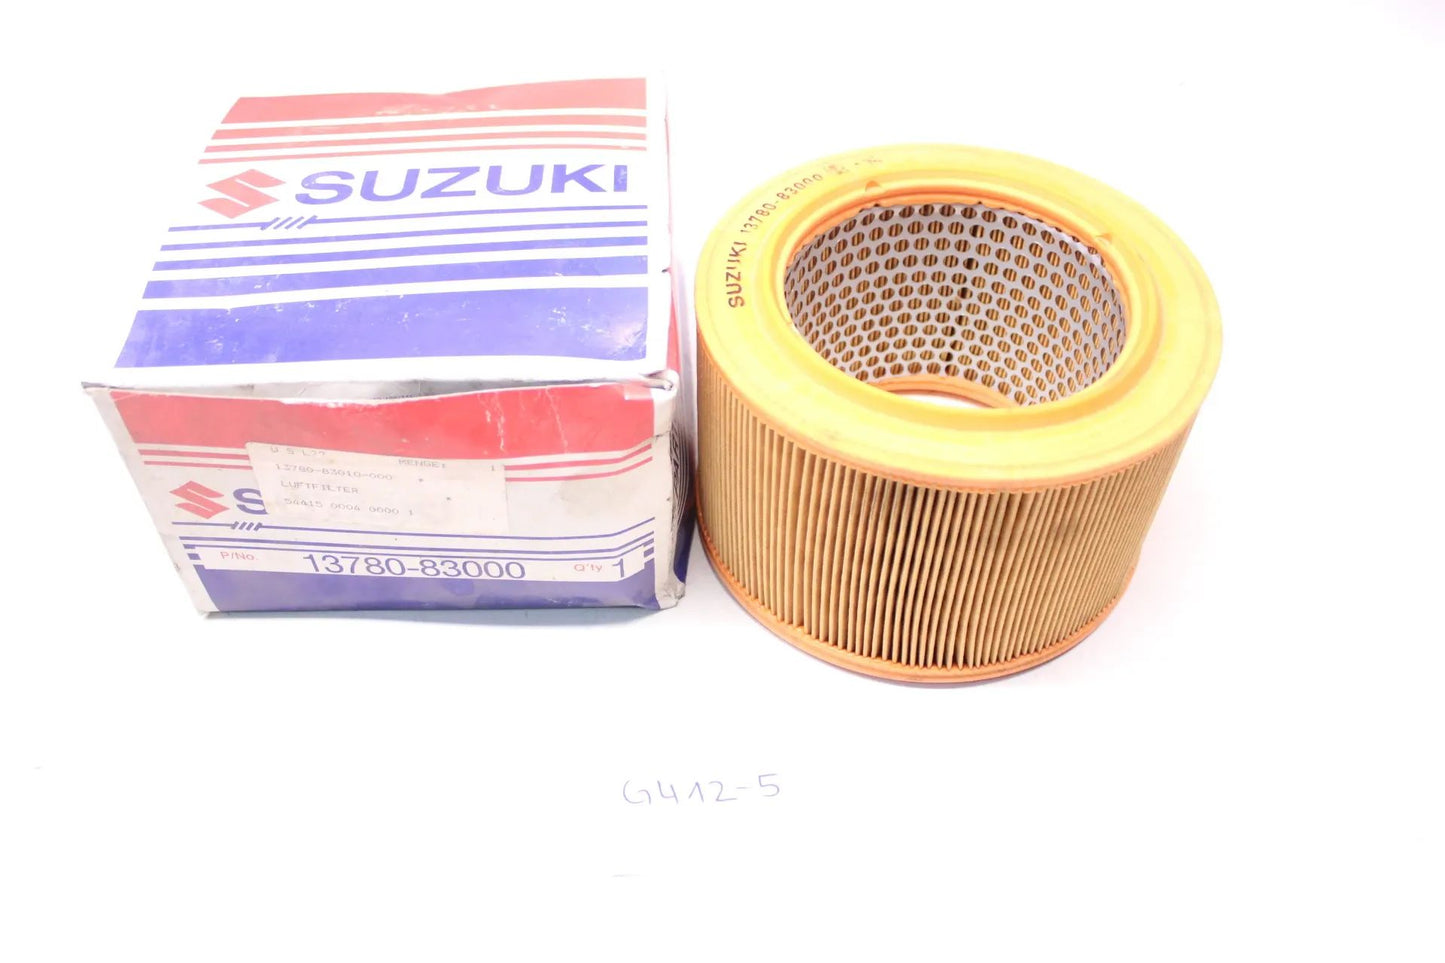 NEU Original Suzuki Luftfilter Suzuki 13780-83010-000 NOS